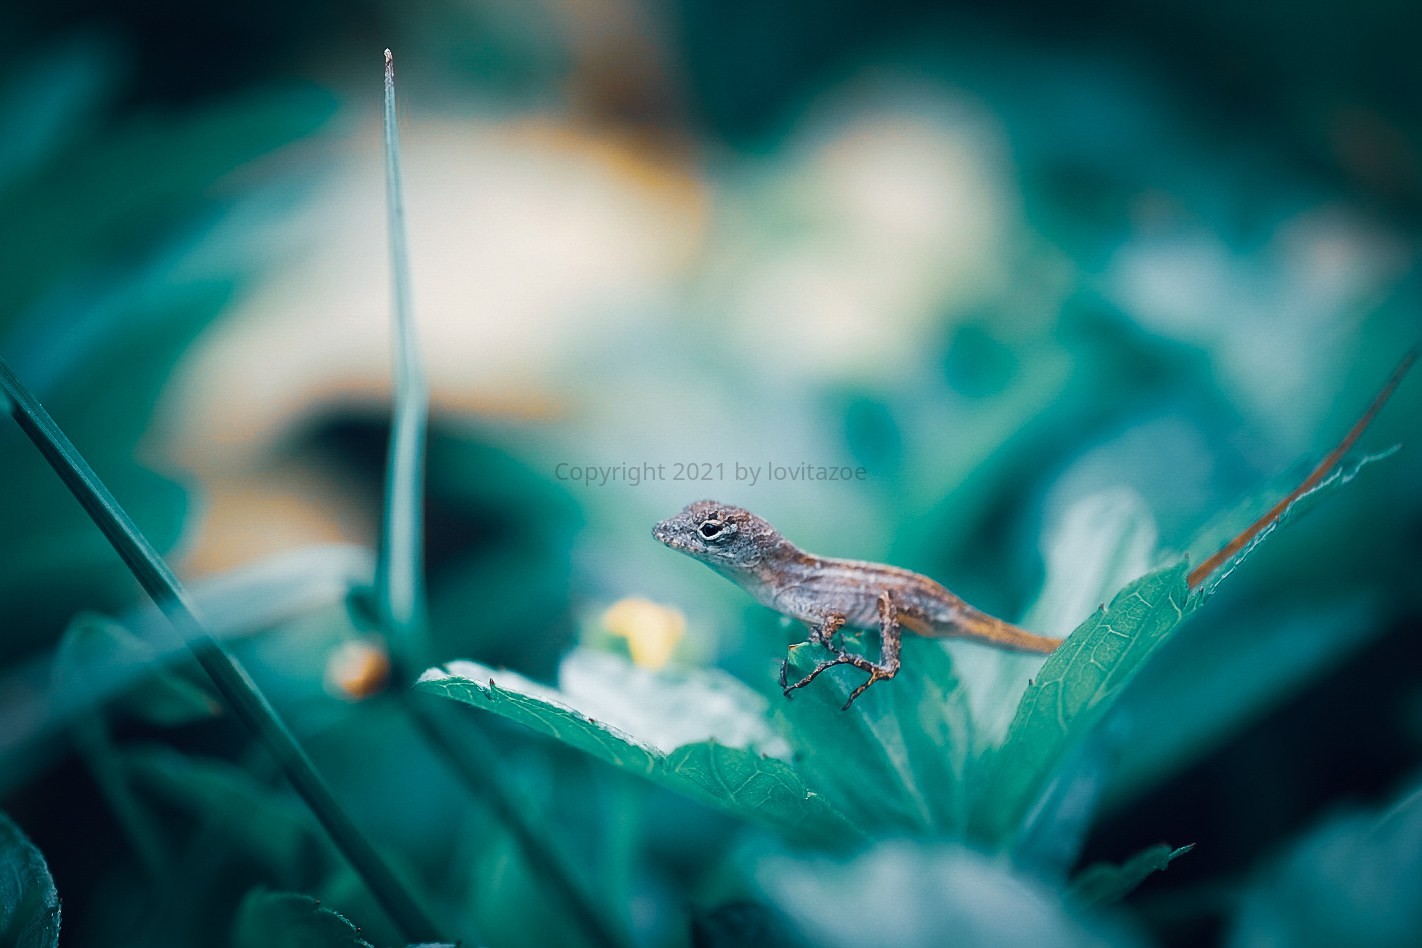 A Tiny Lizard